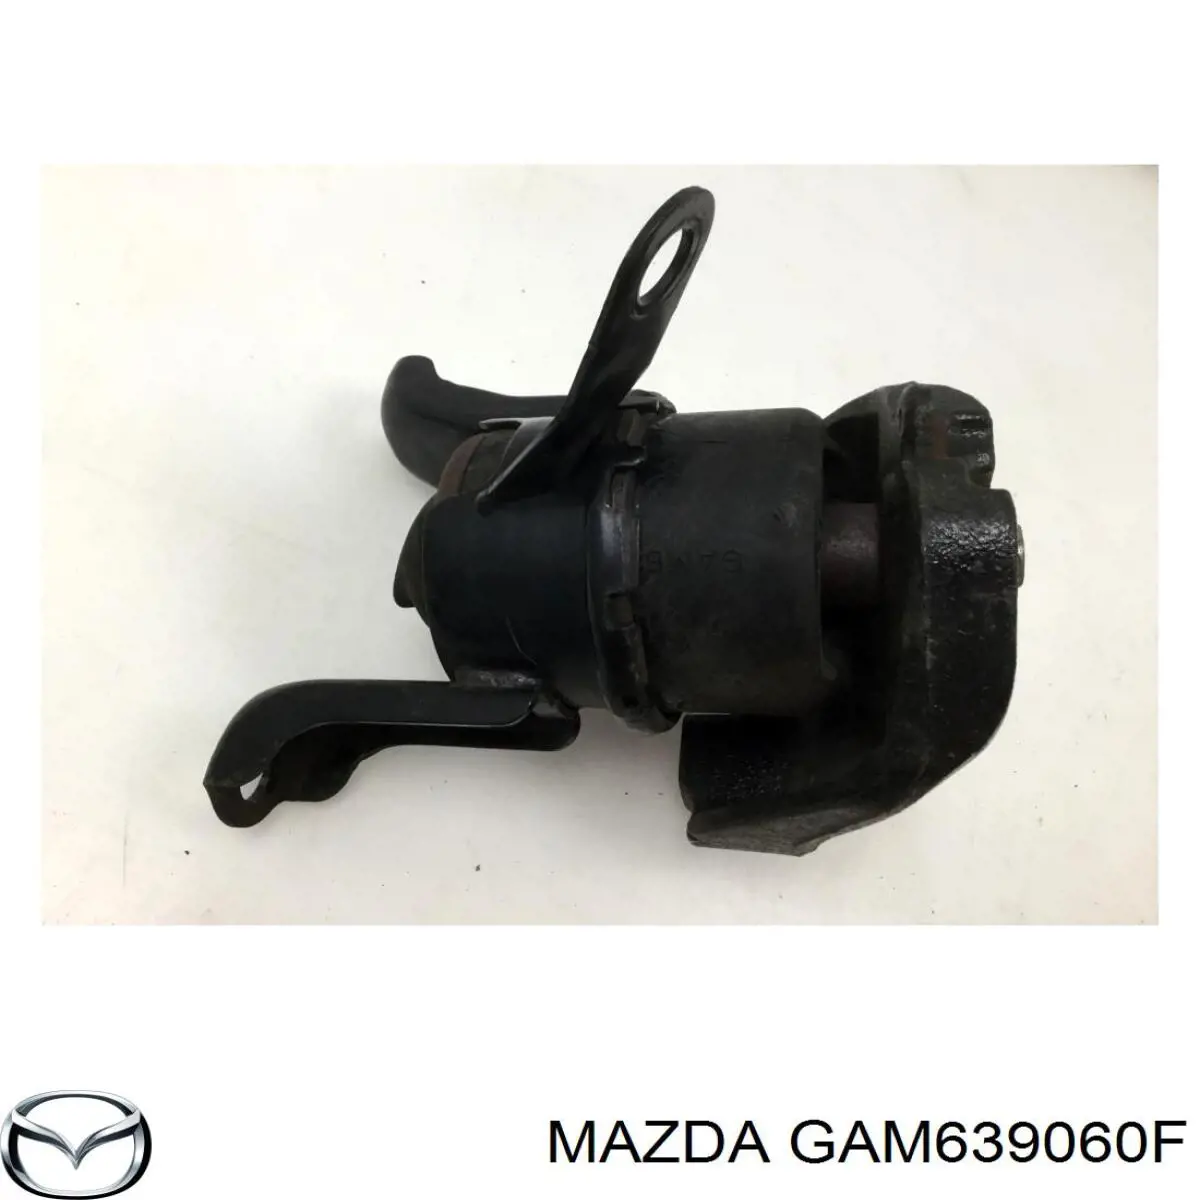 GAM639060E Mazda soporte de motor derecho